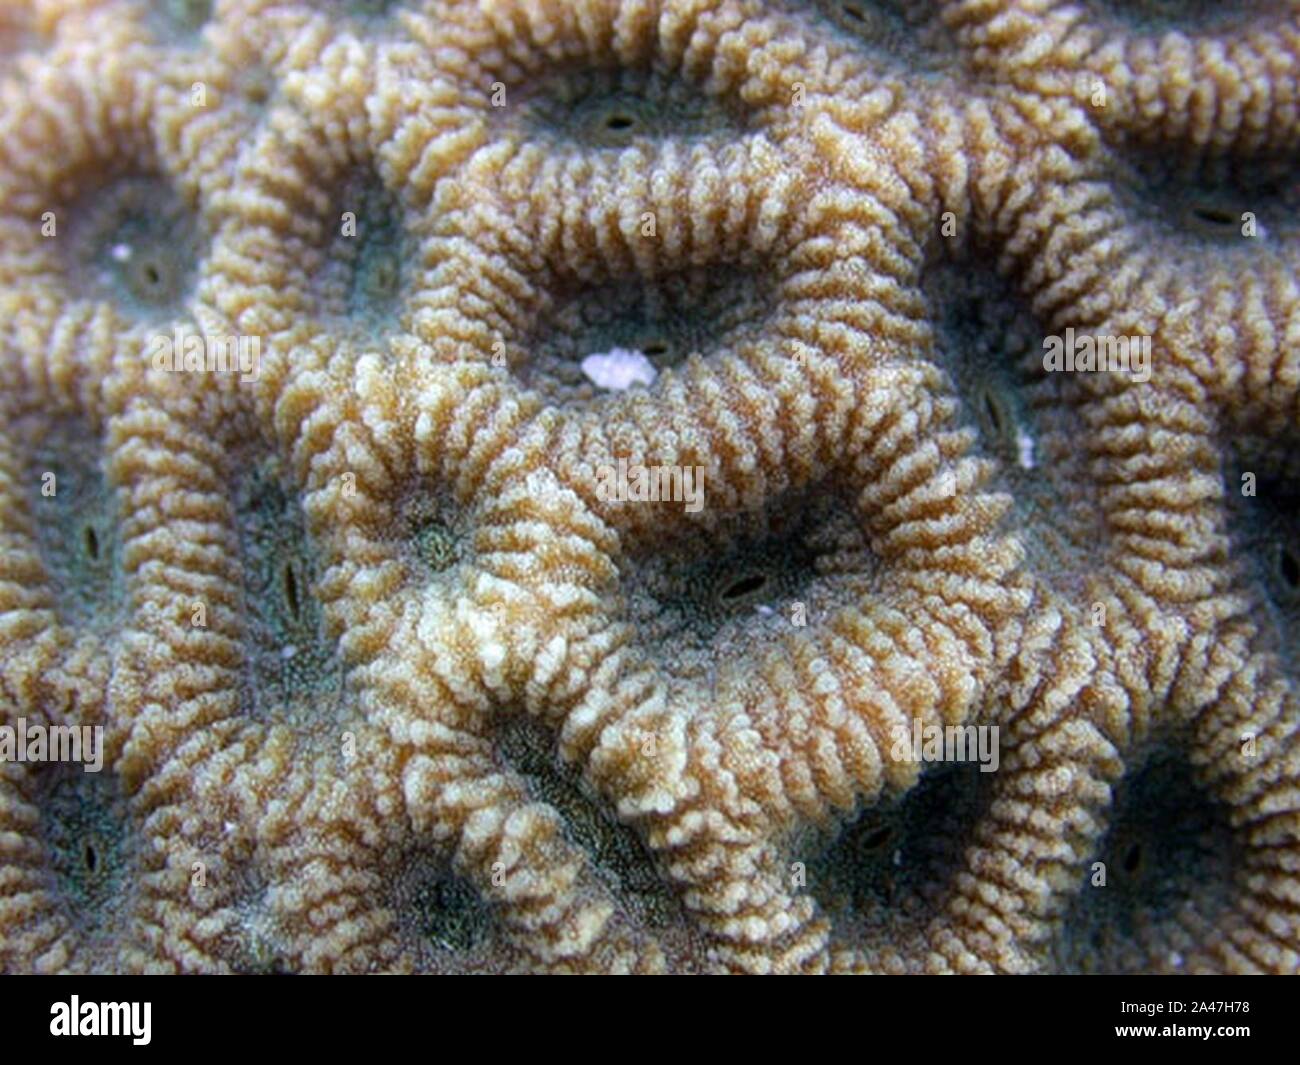 Favites halicora coralitos. Stock Photo